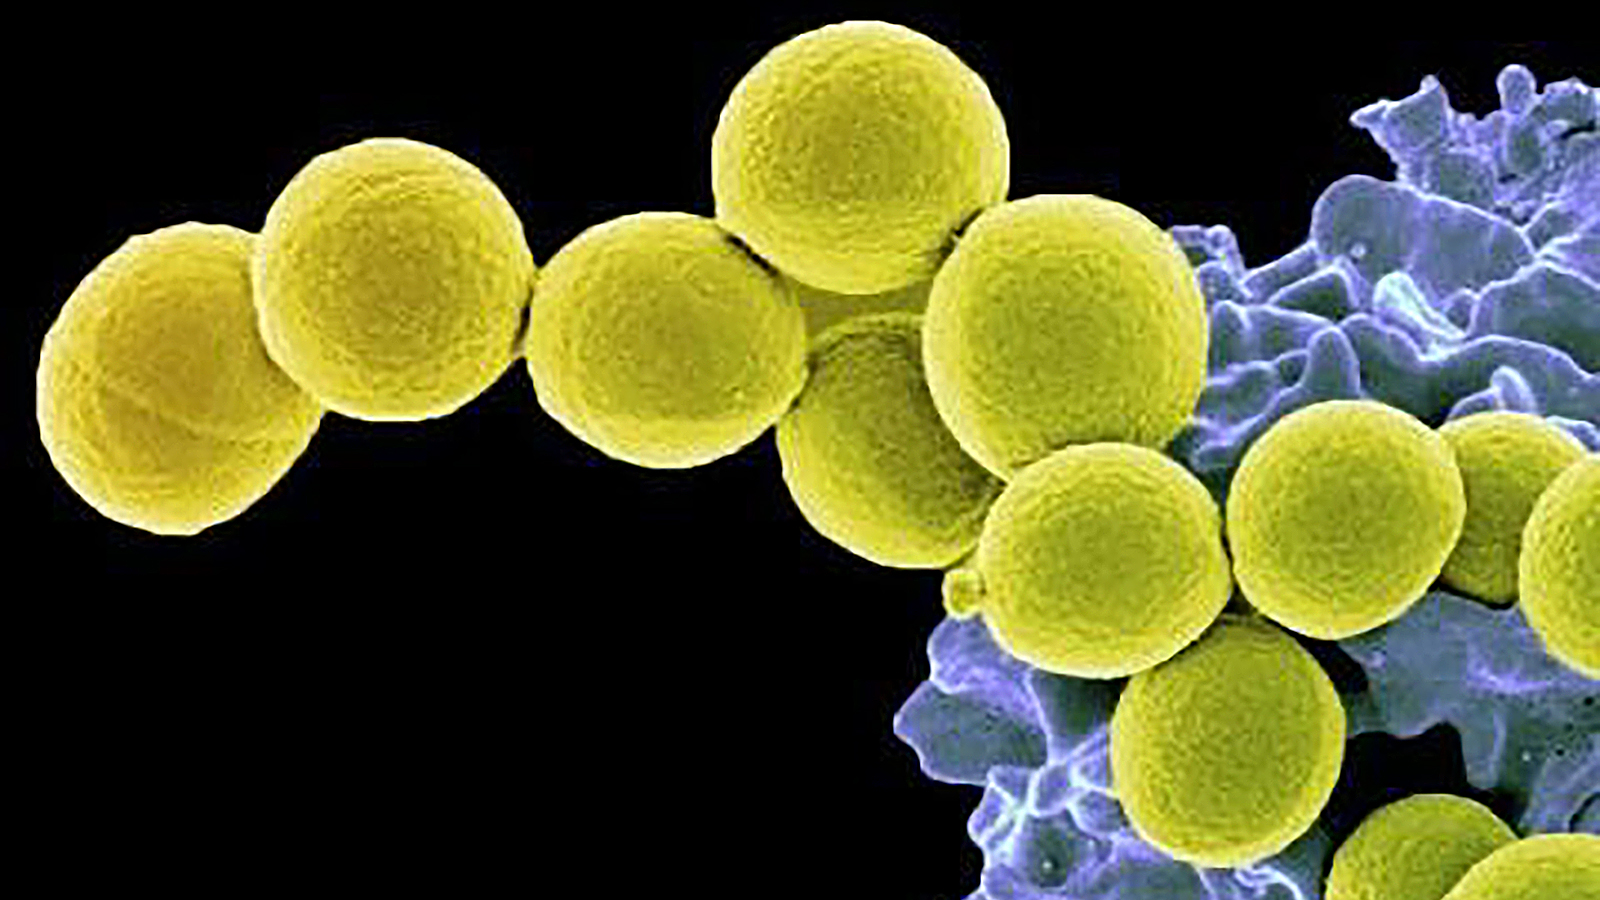 1 staphylococcus aureus